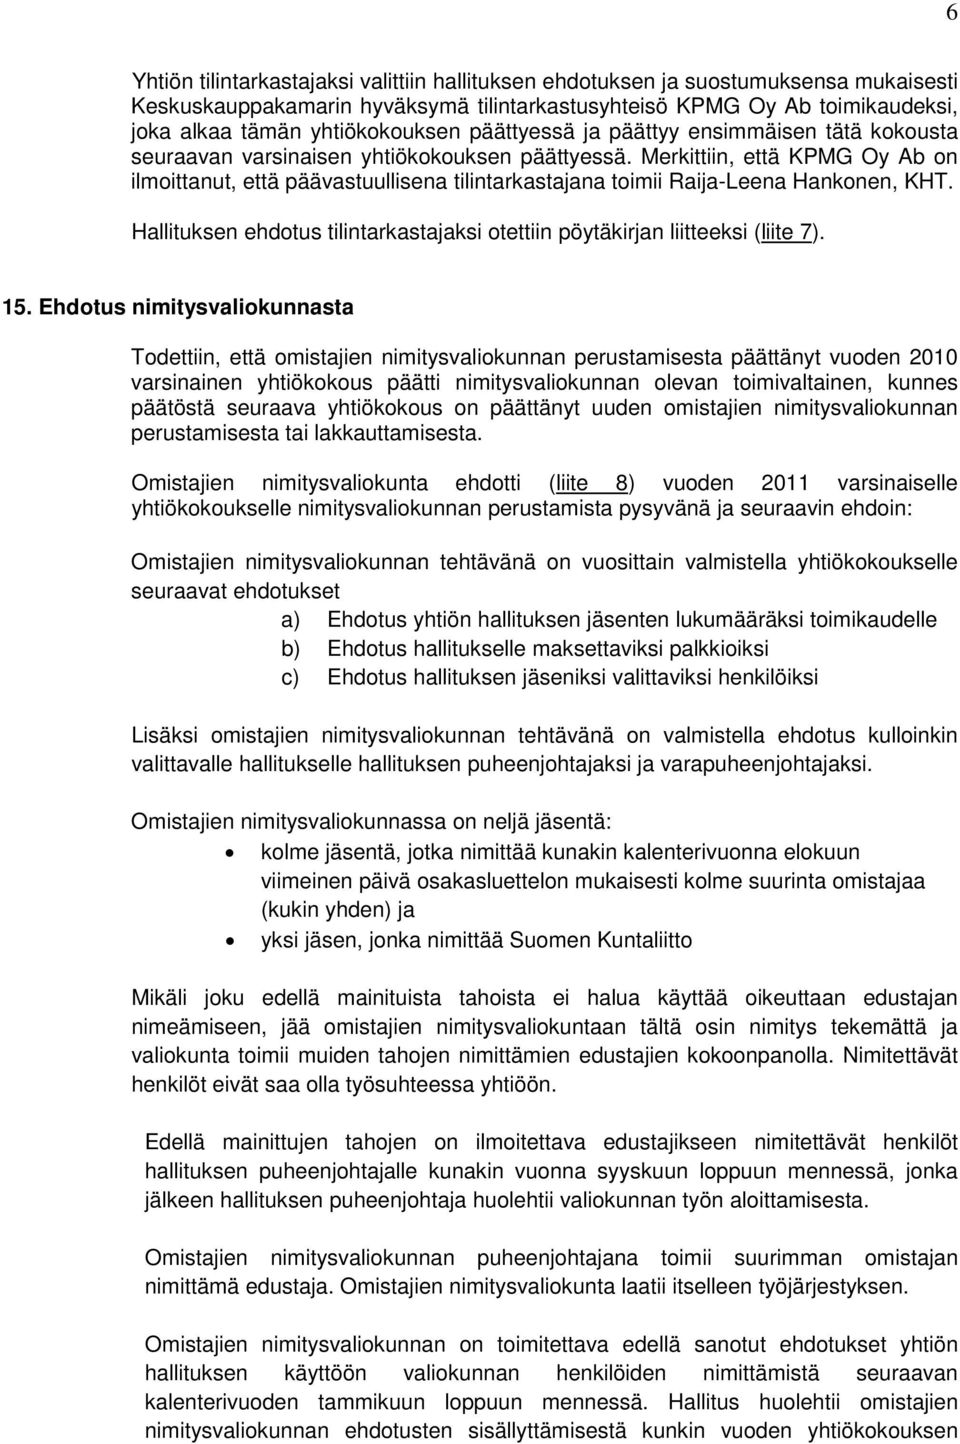 Merkittiin, että KPMG Oy Ab on ilmoittanut, että päävastuullisena tilintarkastajana toimii Raija-Leena Hankonen, KHT. Hallituksen ehdotus tilintarkastajaksi otettiin pöytäkirjan liitteeksi (liite 7).